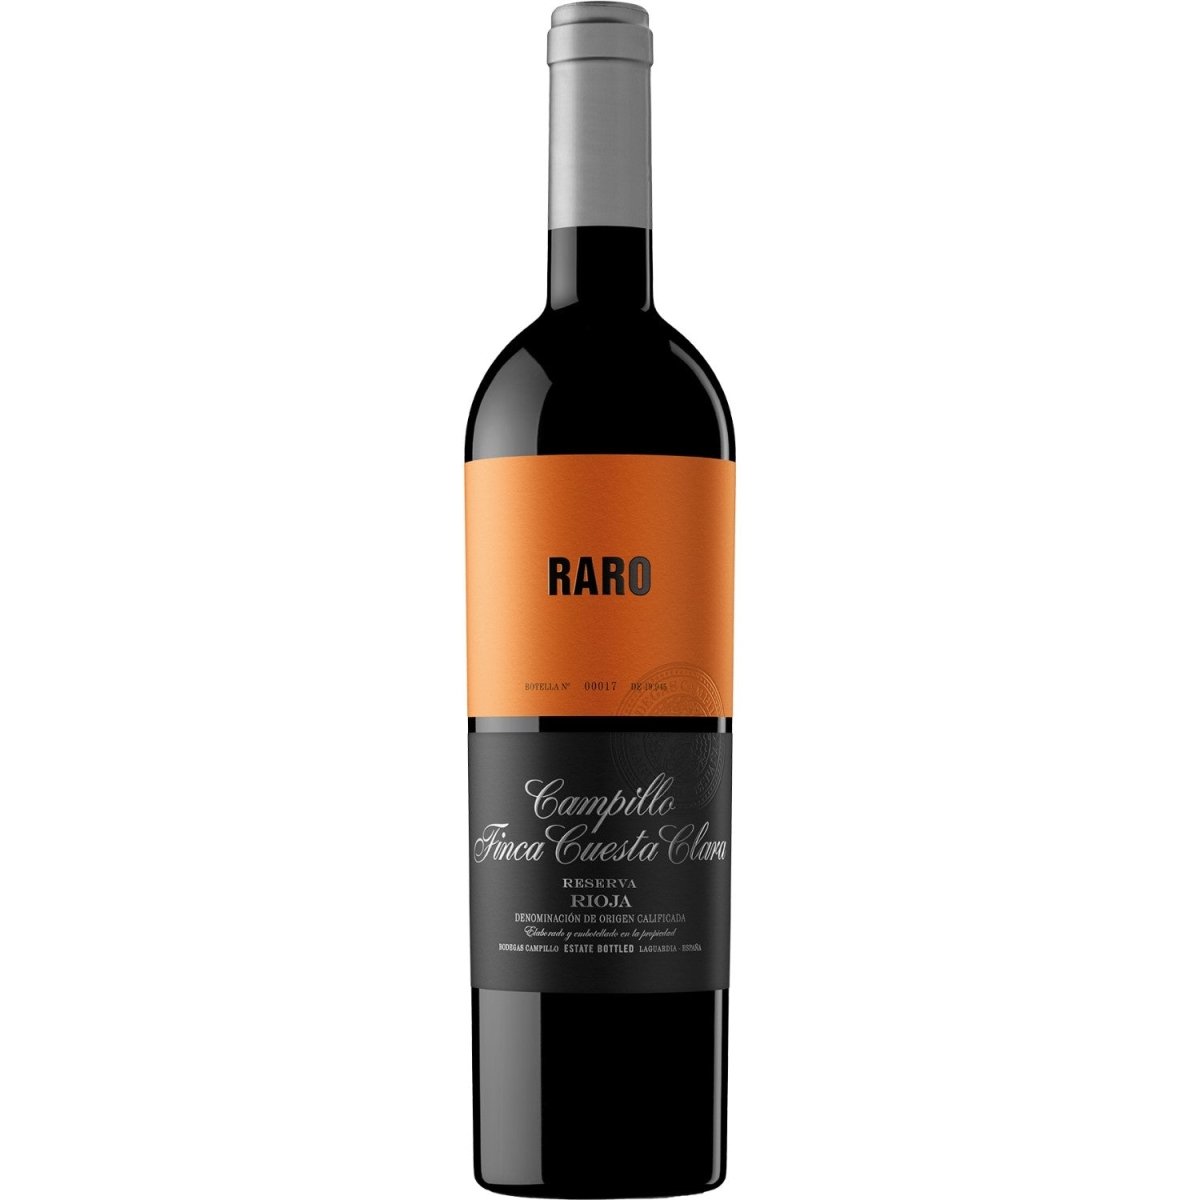 Campillo Raro Finca Cuesta Clara Reserva Rotwein Wein trocken Spanien ( 6 x 0,75l ) - Versanel -